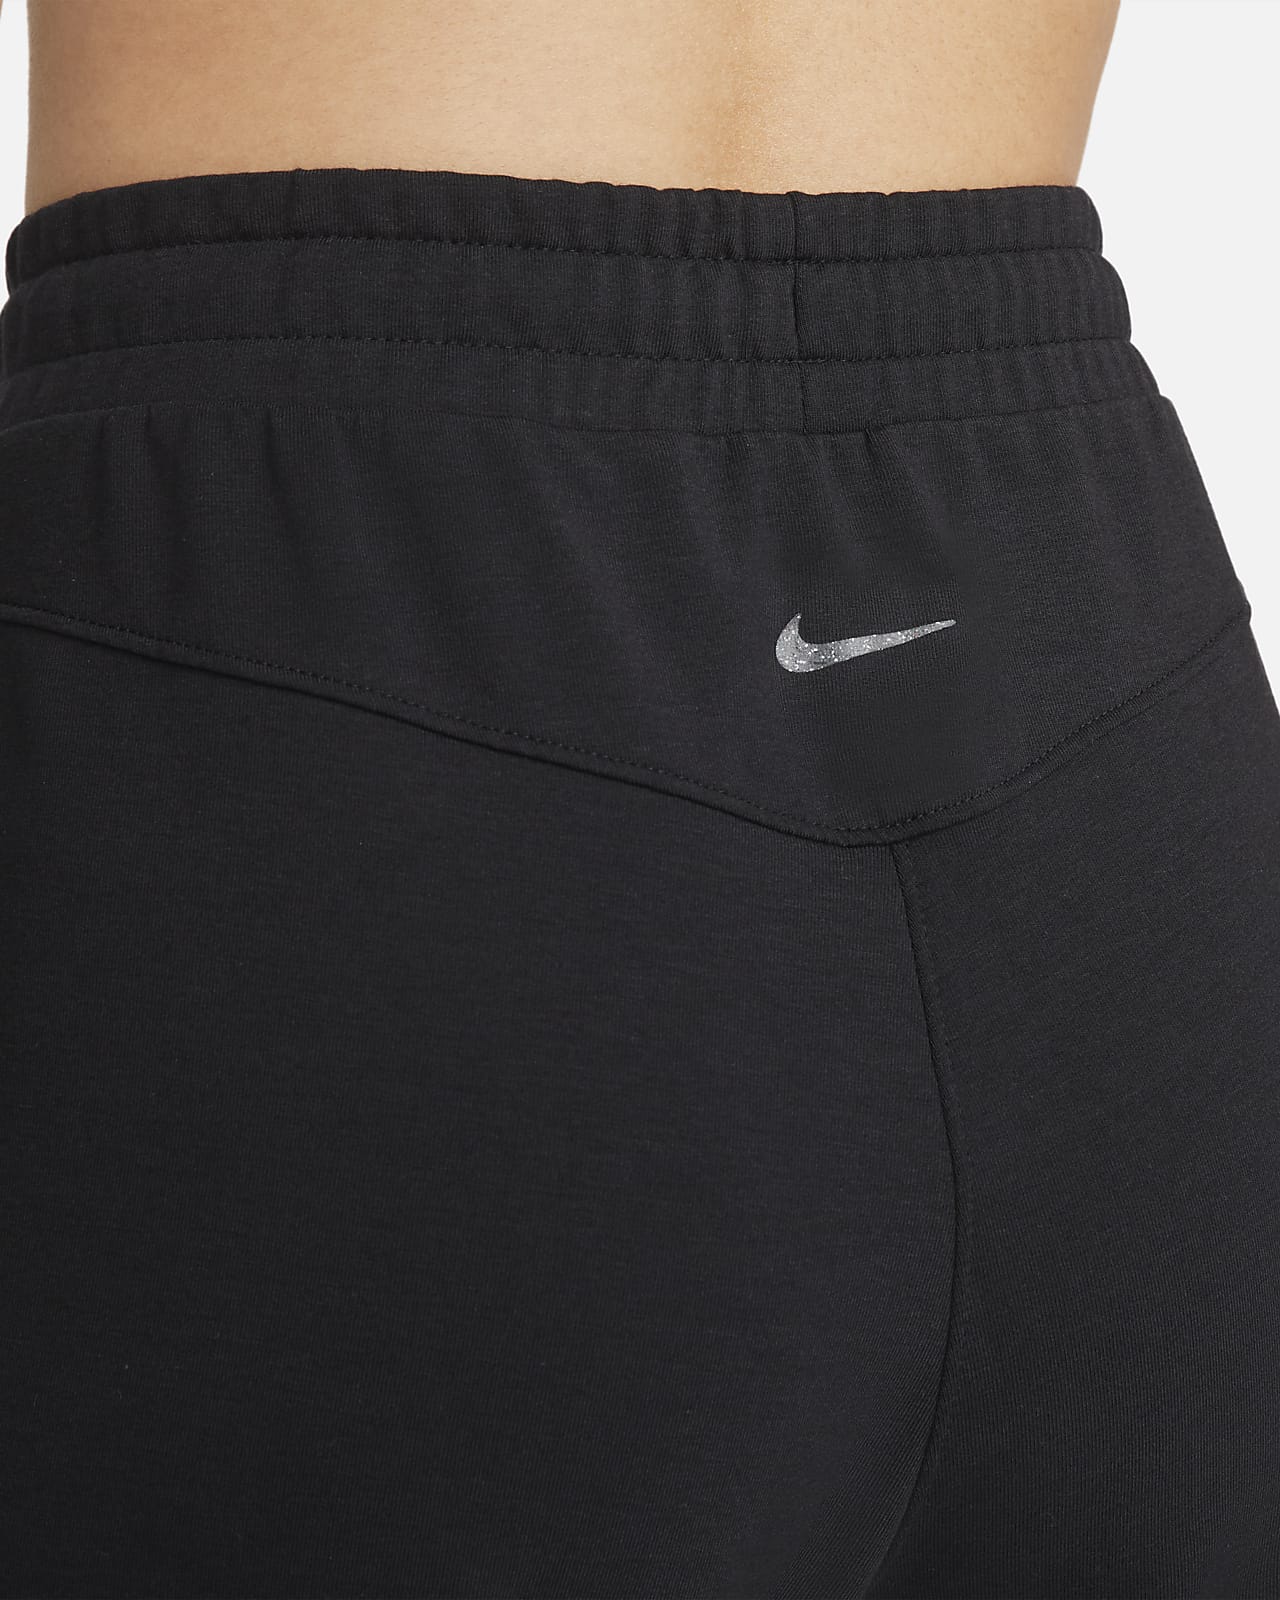 Spodnie Nike Yoga Dri-FIT W DM7037-010 : Rozmiar - XS - Ceny i opinie 